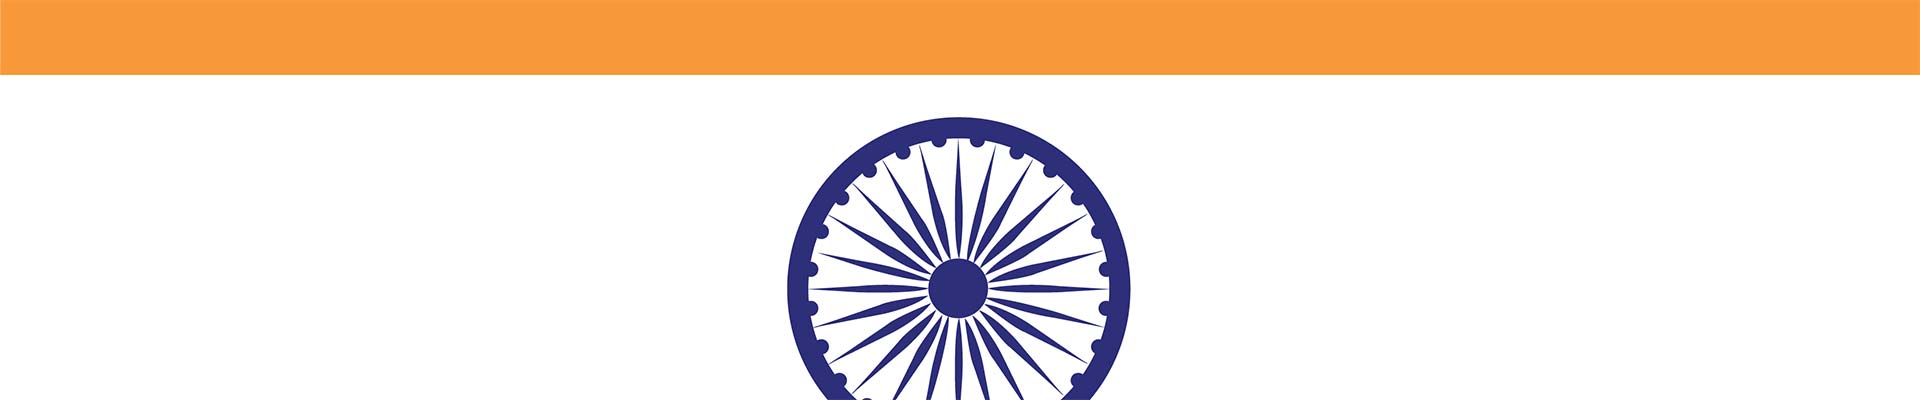 Un segment du drapeau indien